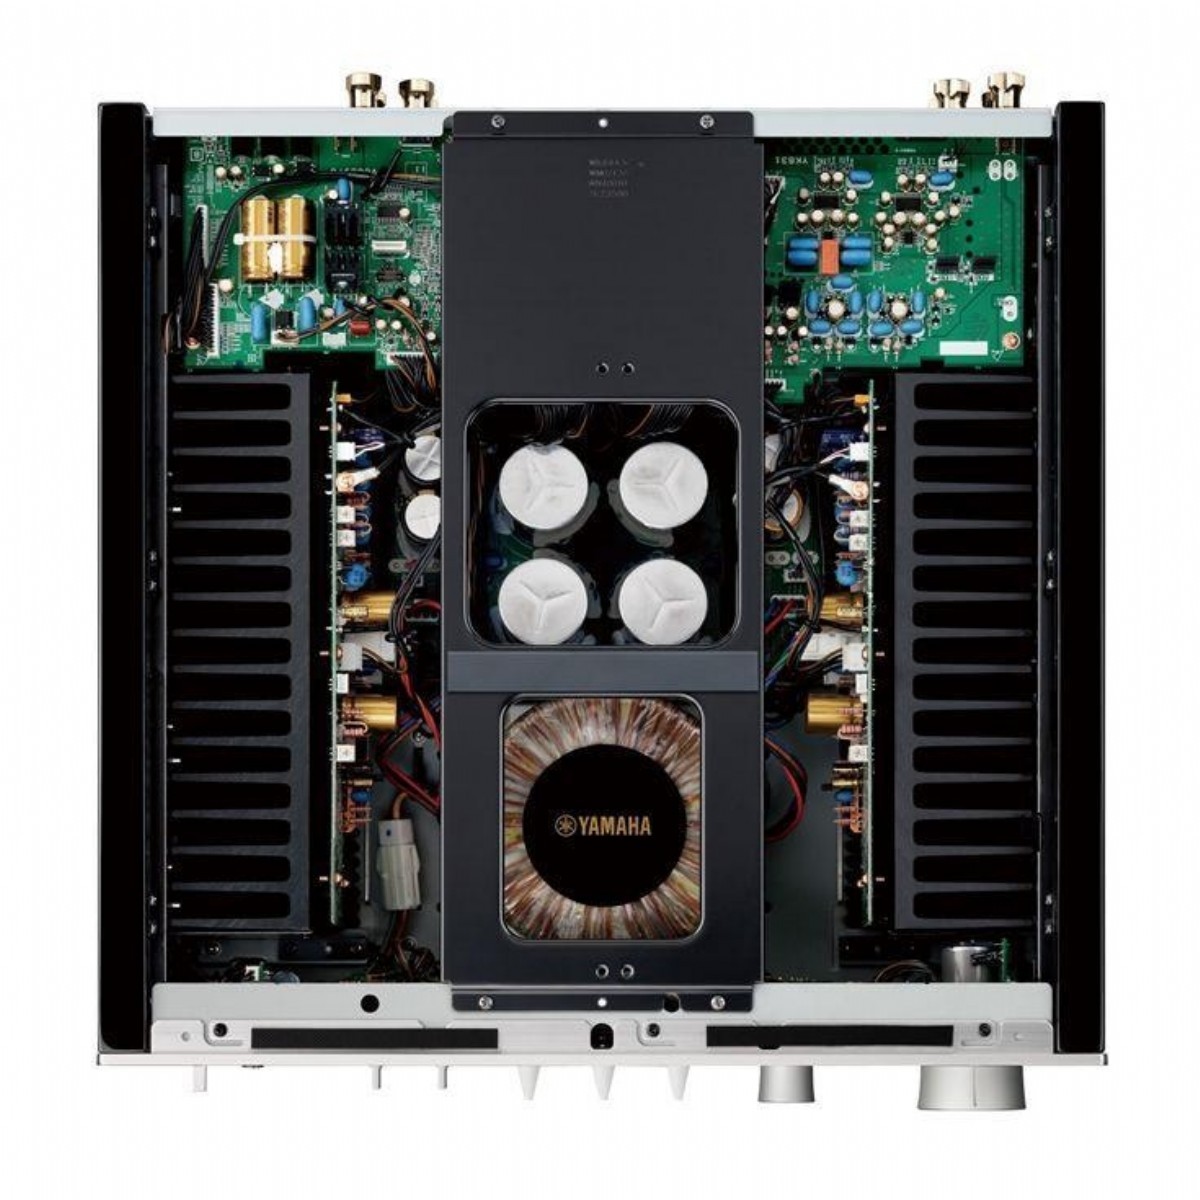 Entegre Ampliler | Yamaha AS 1200 Entegre Amfi | AS 1200 | yamaha as1200 entegre ampli,as1200 amfi,as1200,akusta hifi | 